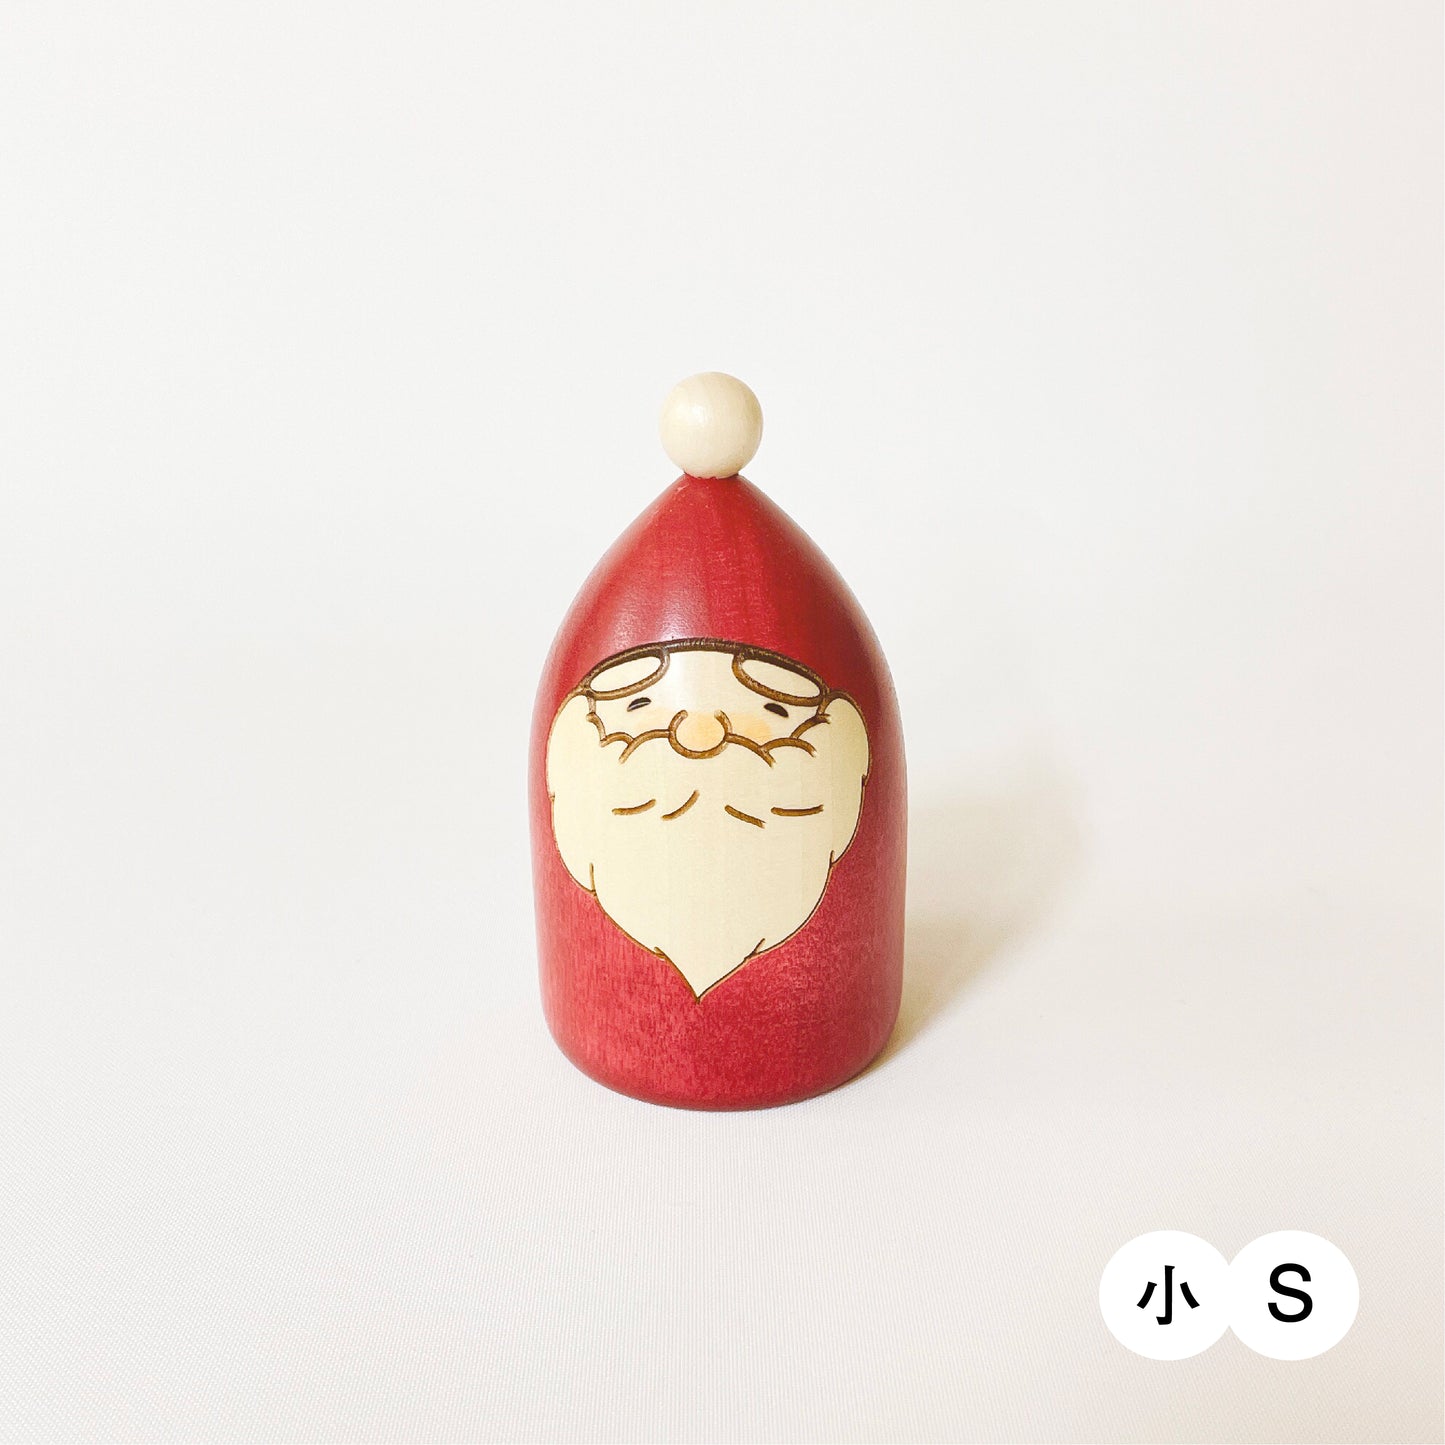 Tree shaped Santa